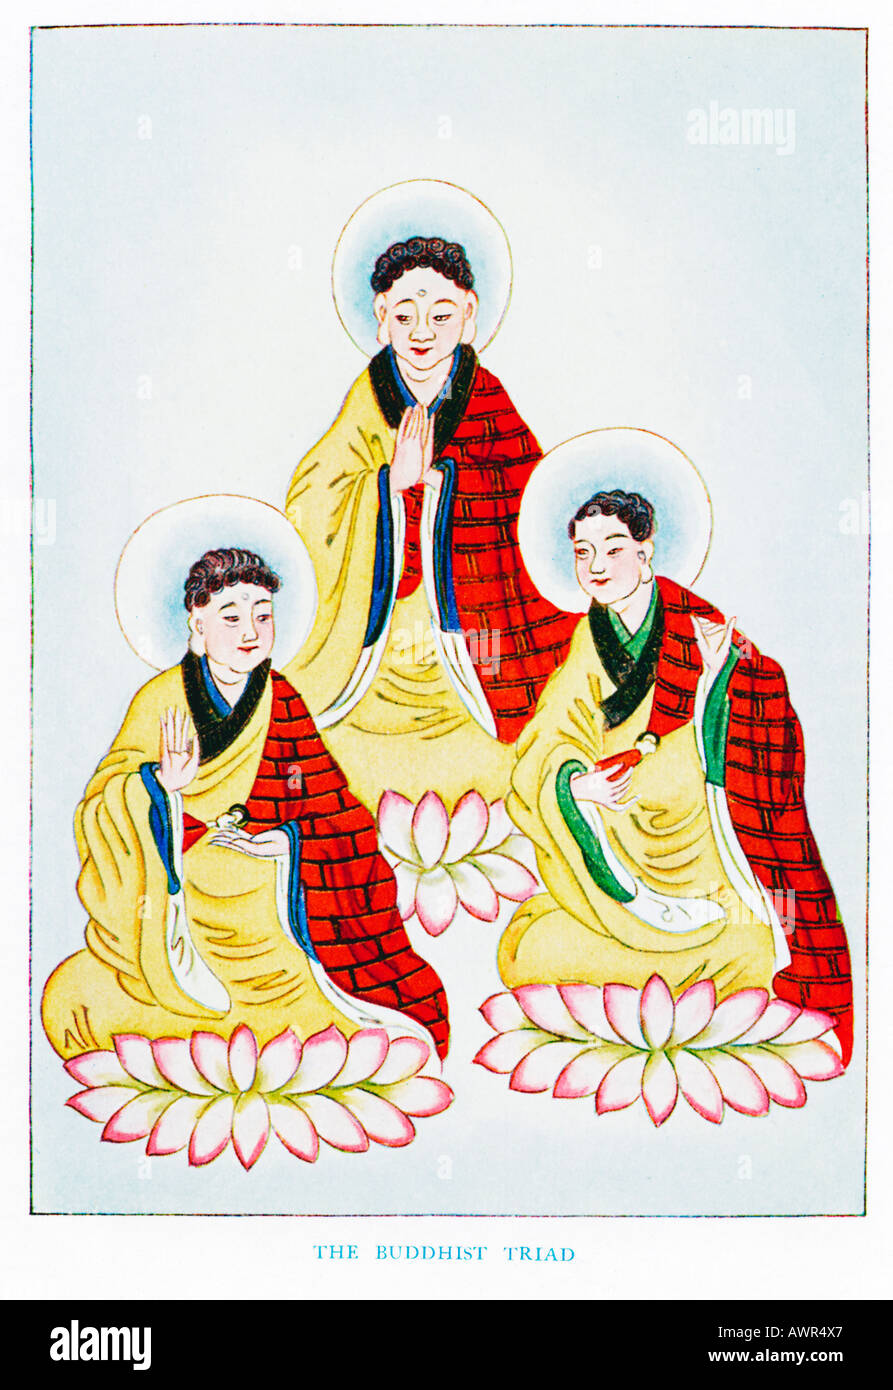 La Triade bouddhique le San Pao Pao Pao Fo Fa et la Loi de bouddha Pao Seng et le sacerdoce 1920 illustration Banque D'Images